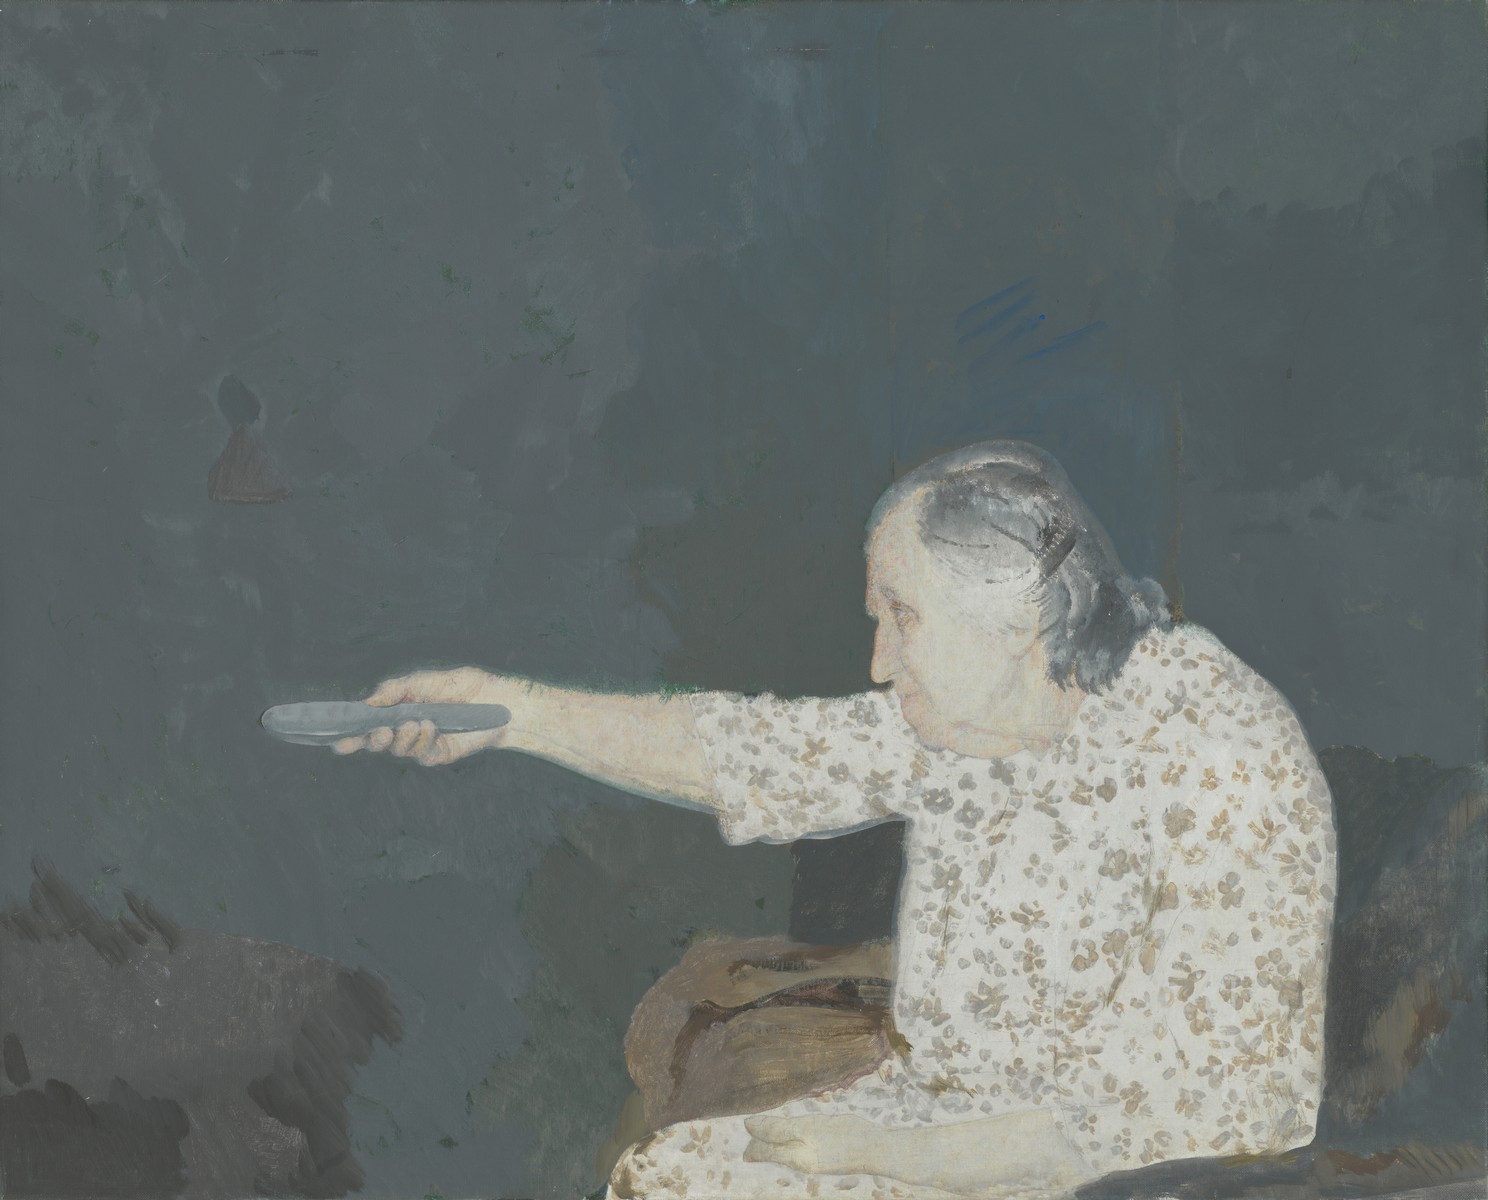 Edi Hila, „Matka”, 2000, akryl, płótno, 82 x 101,5 cm. Fot. Jens Zieche. Dzięki uprzejmości Silvy Agostini © Edi Hila (źródło: materiały prasowe organizatora)